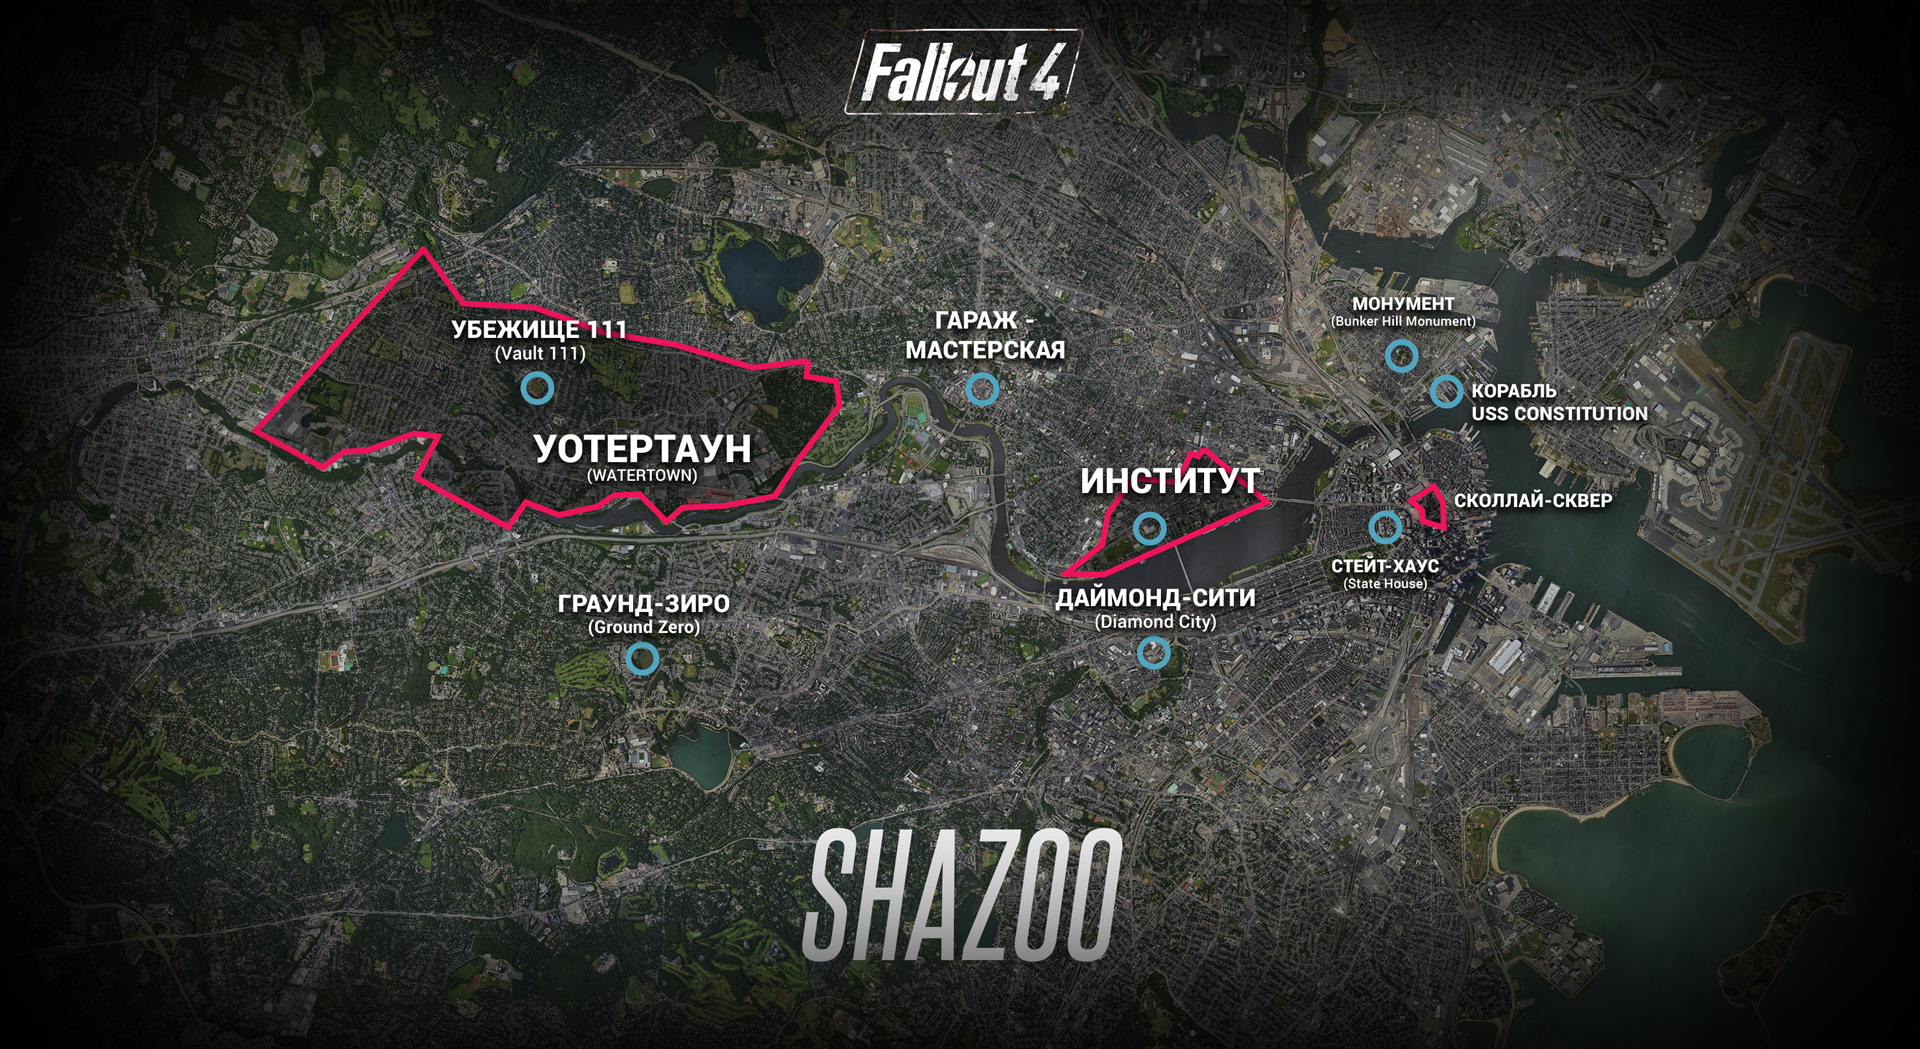 Fallout 4 руководство по тайным операциям сша на карте фото 88